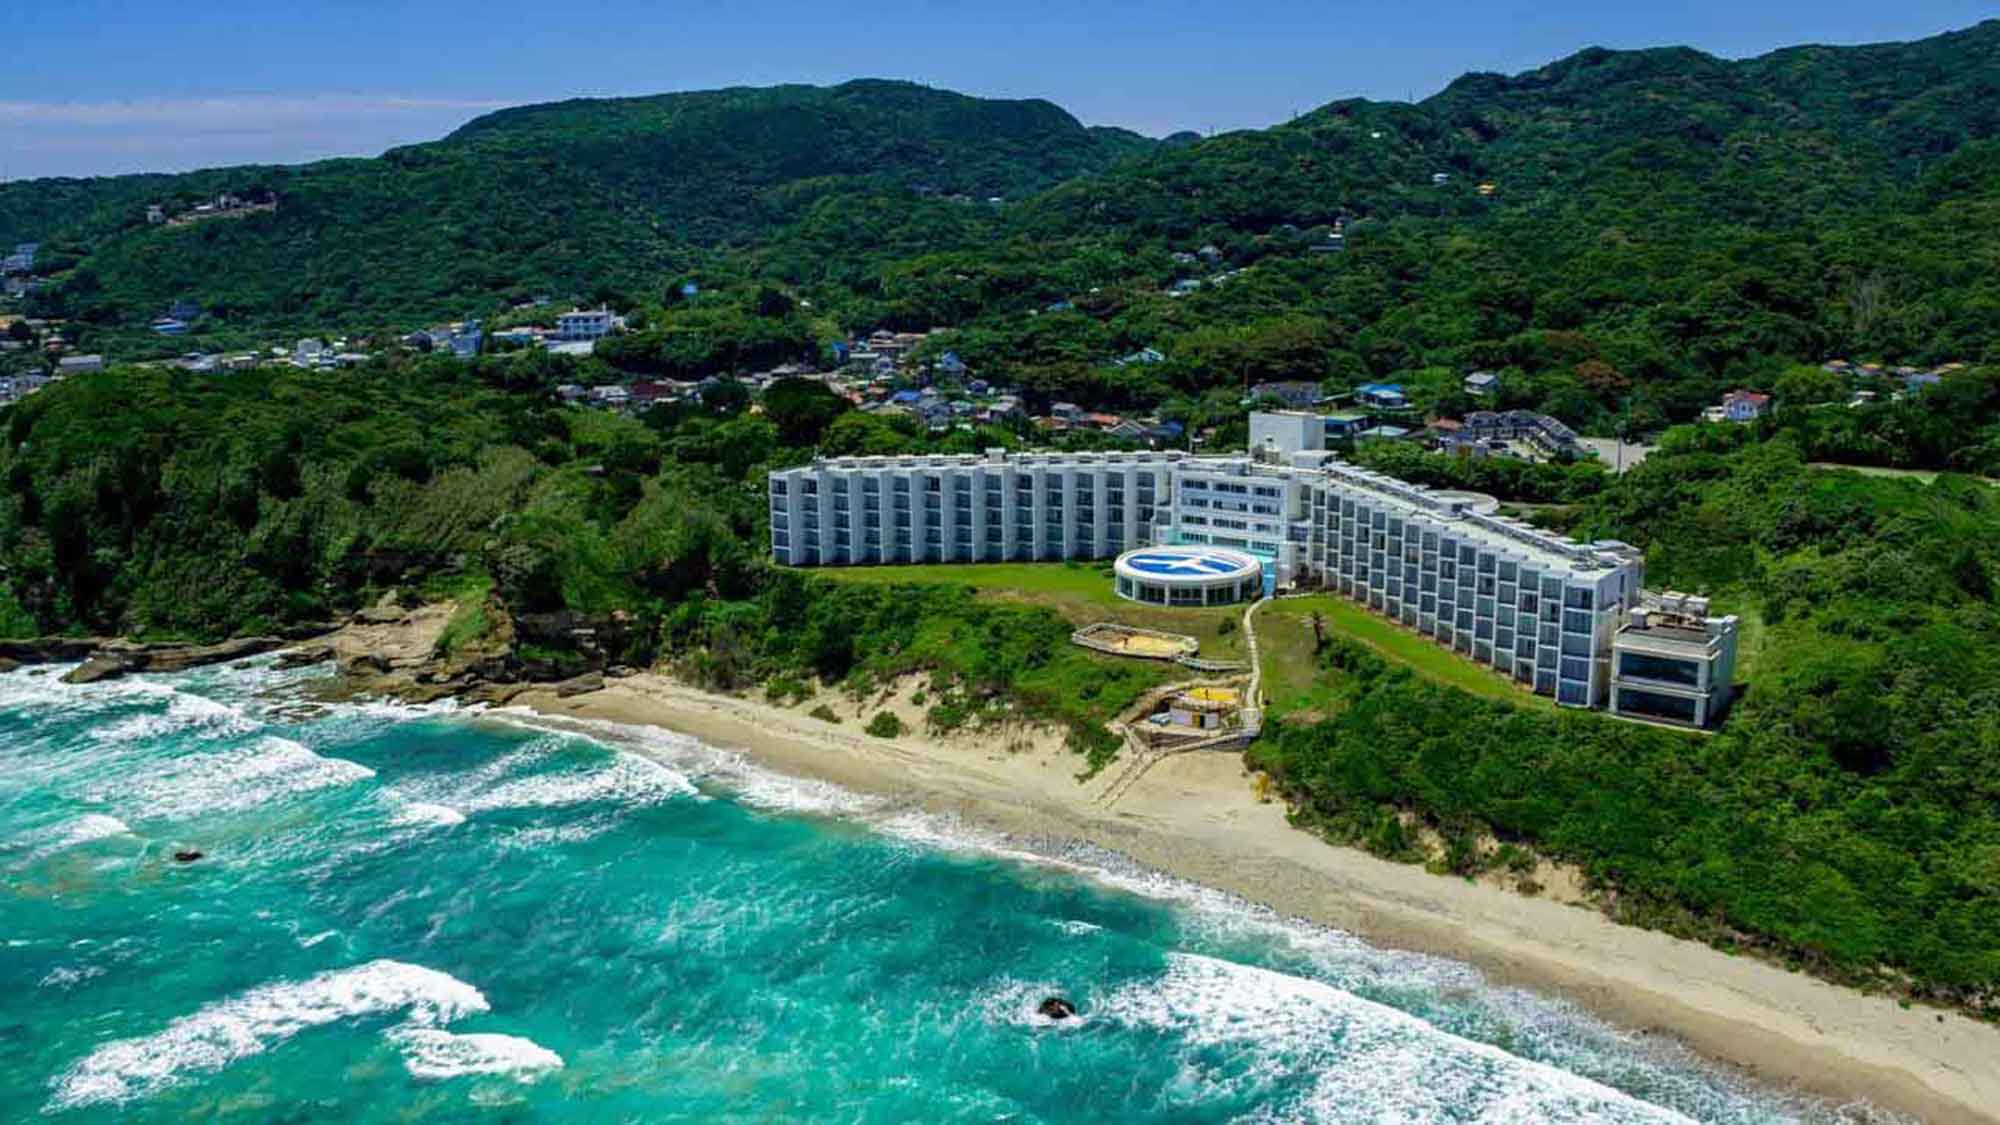 【ホテル全景】伊豆のなかでも美しいと称される「白浜海岸」に佇む下田プリンスホテル。